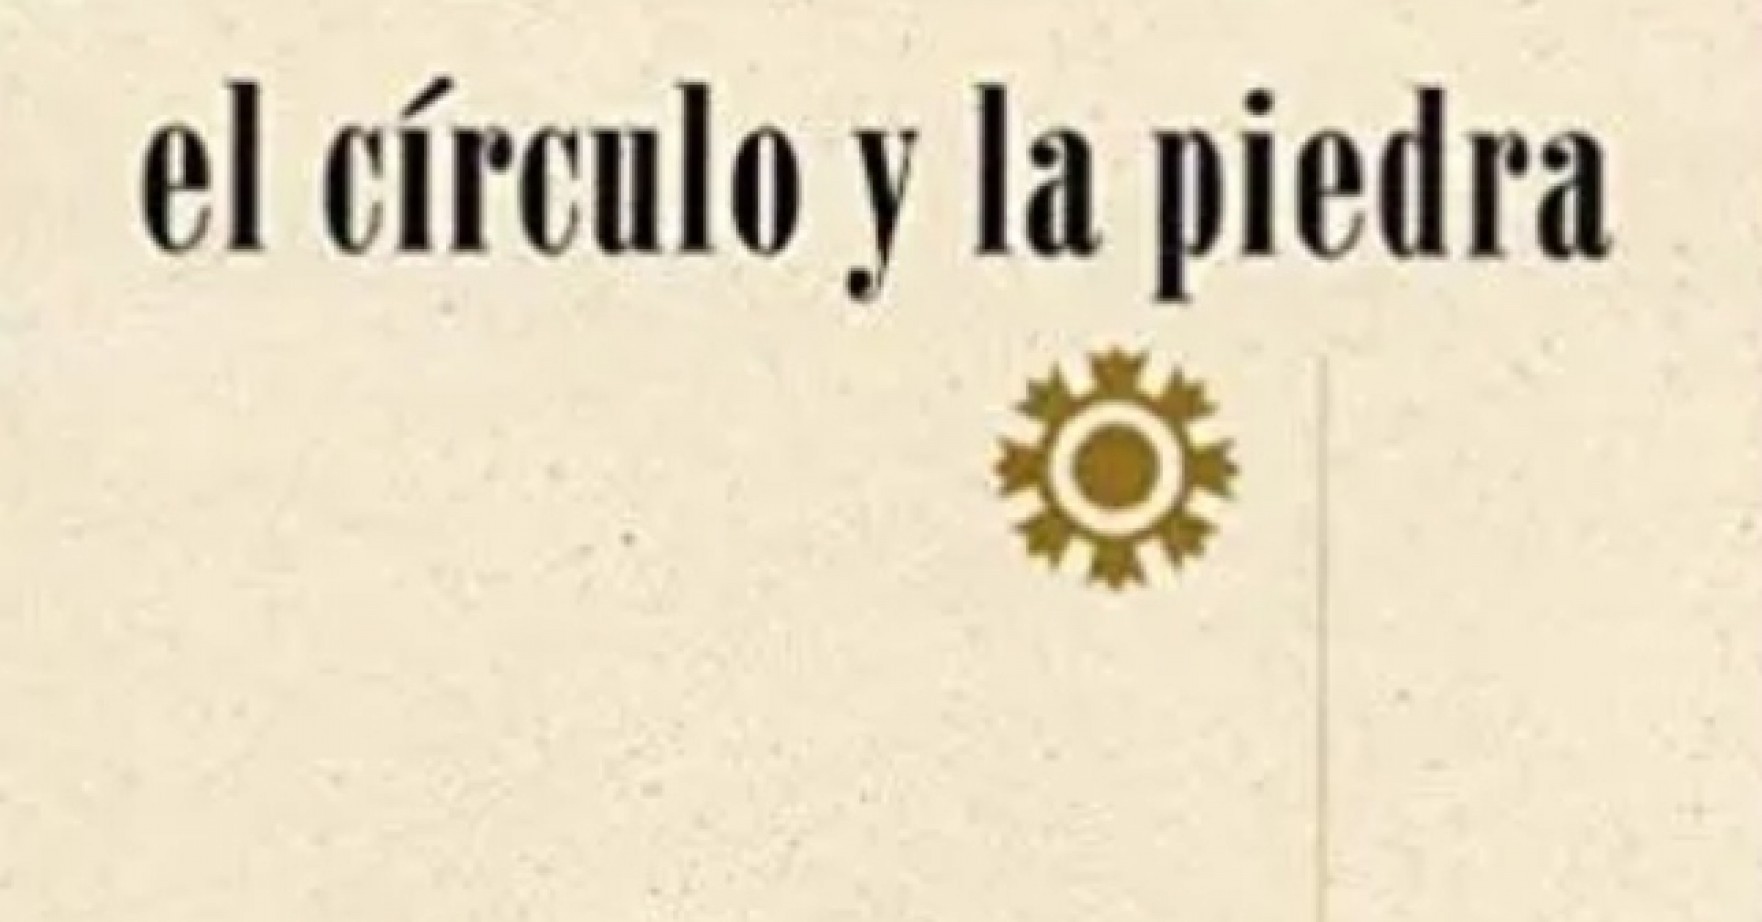 Lectura poética de José María Castrillón